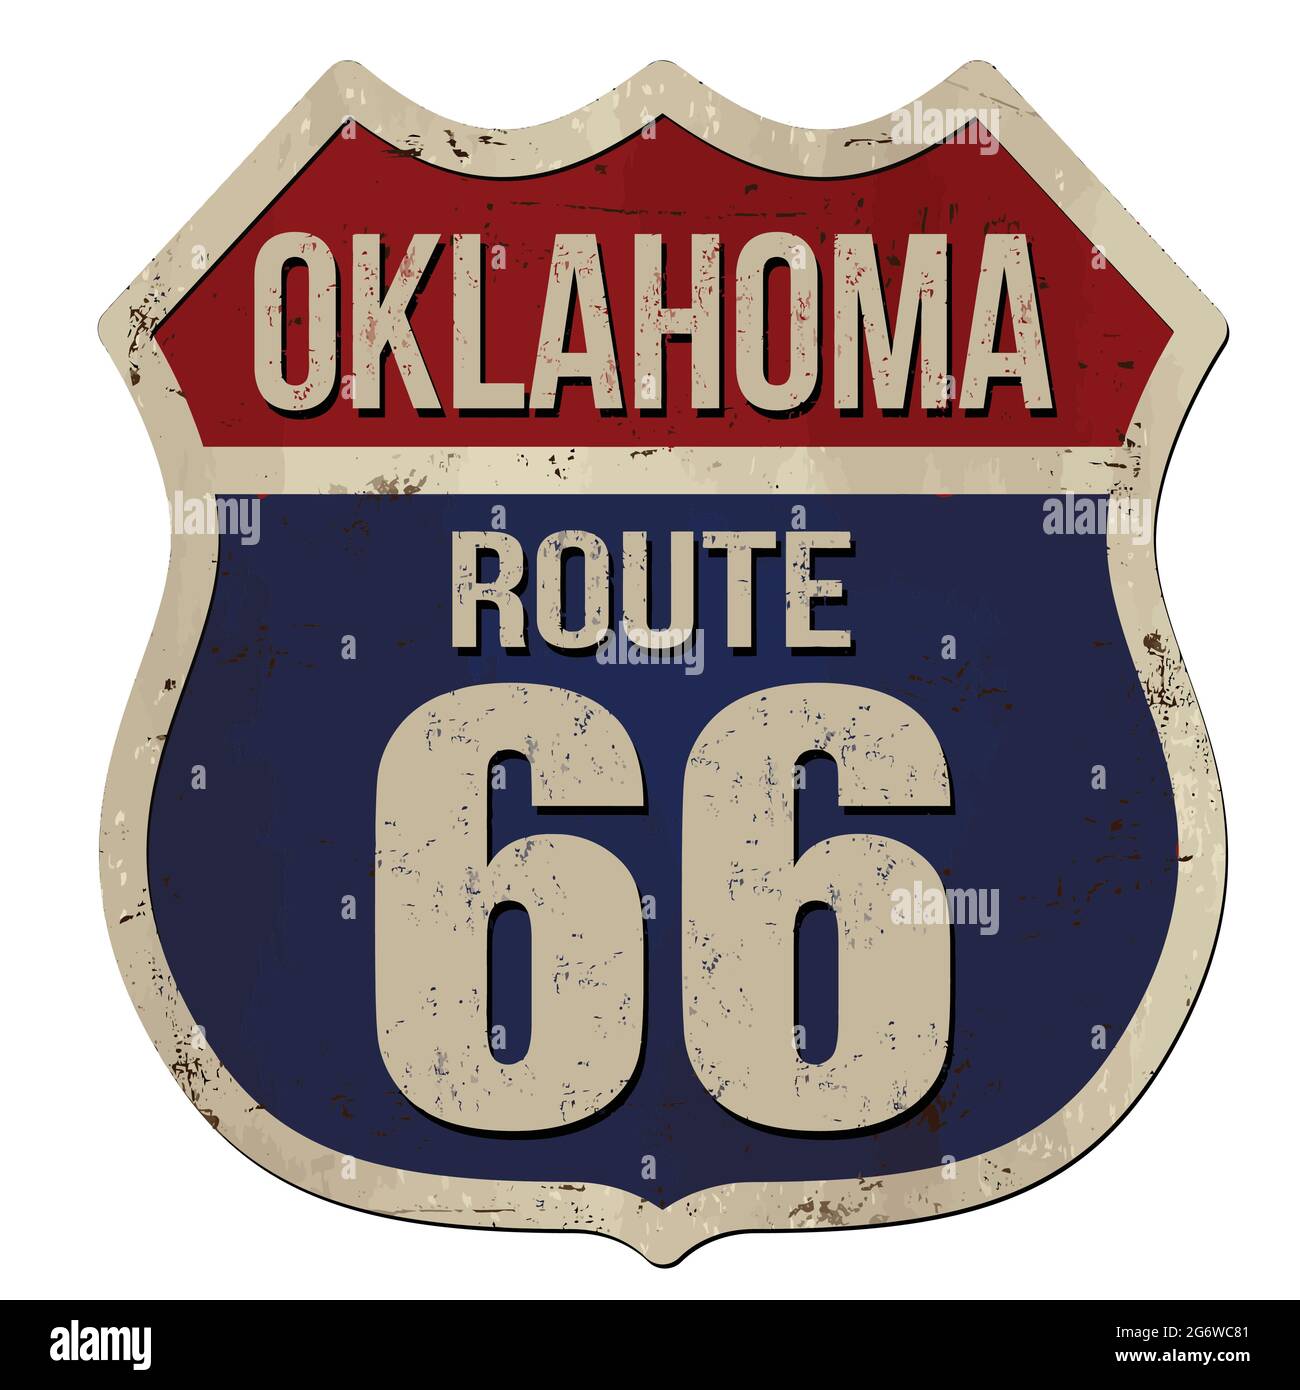 Oklahoma, route 66 panneau en métal rouillé vintage sur fond blanc, illustration vectorielle Illustration de Vecteur